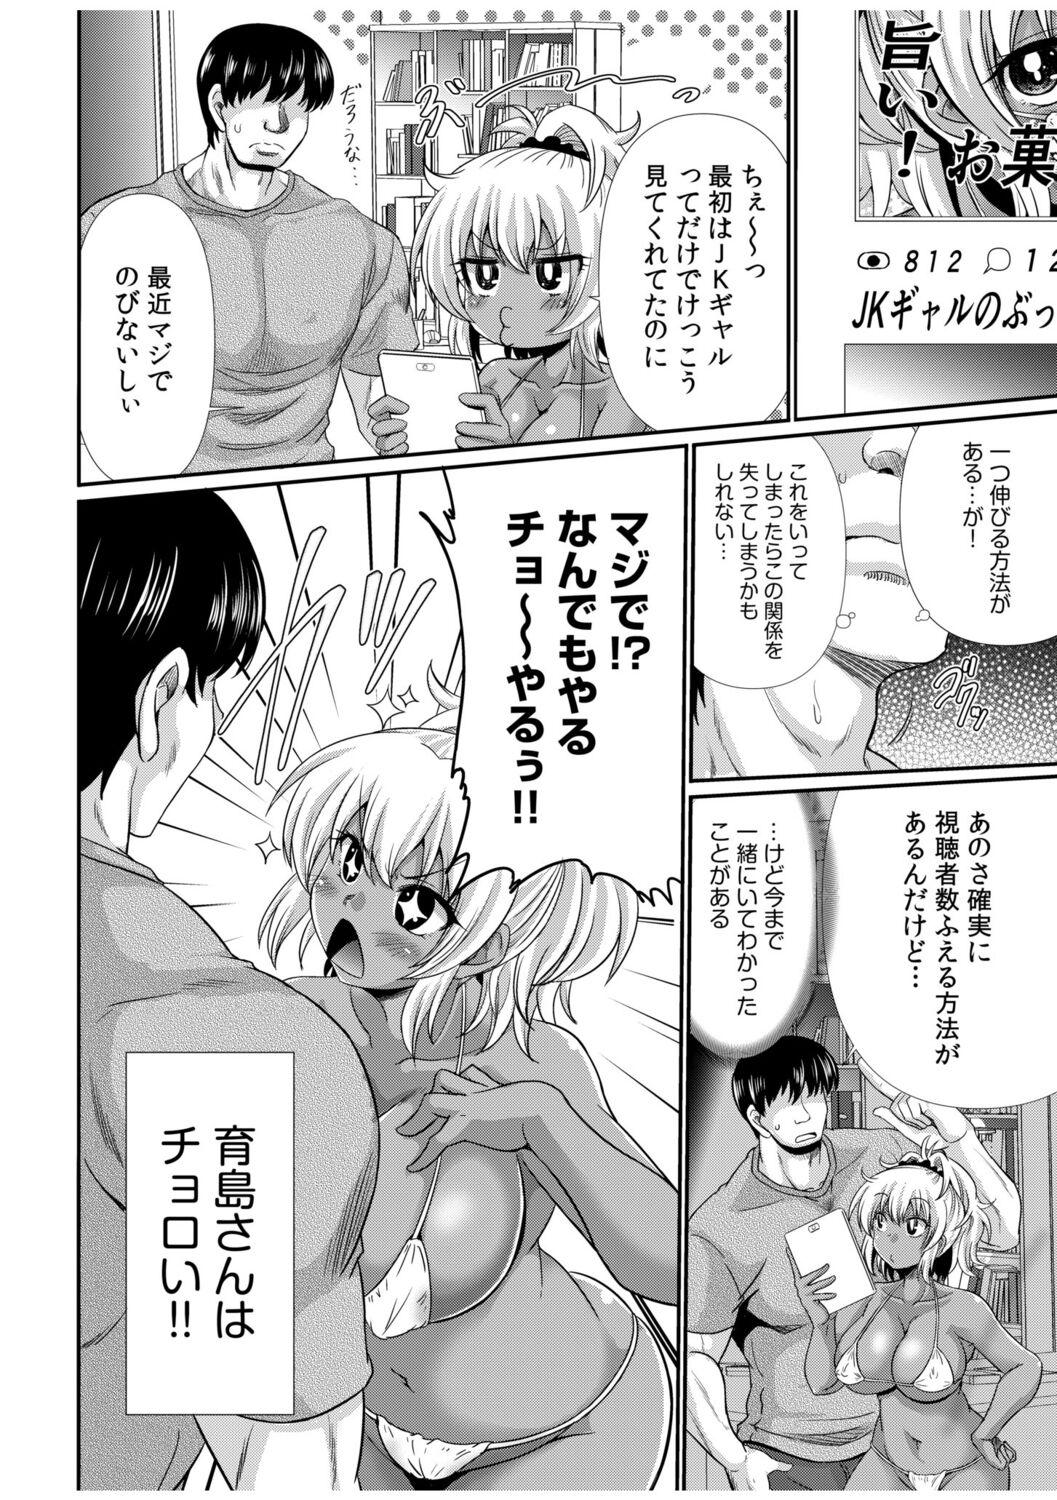 Chacal Kuro Gal Haishin Hajimemashita! Rimming - Page 6